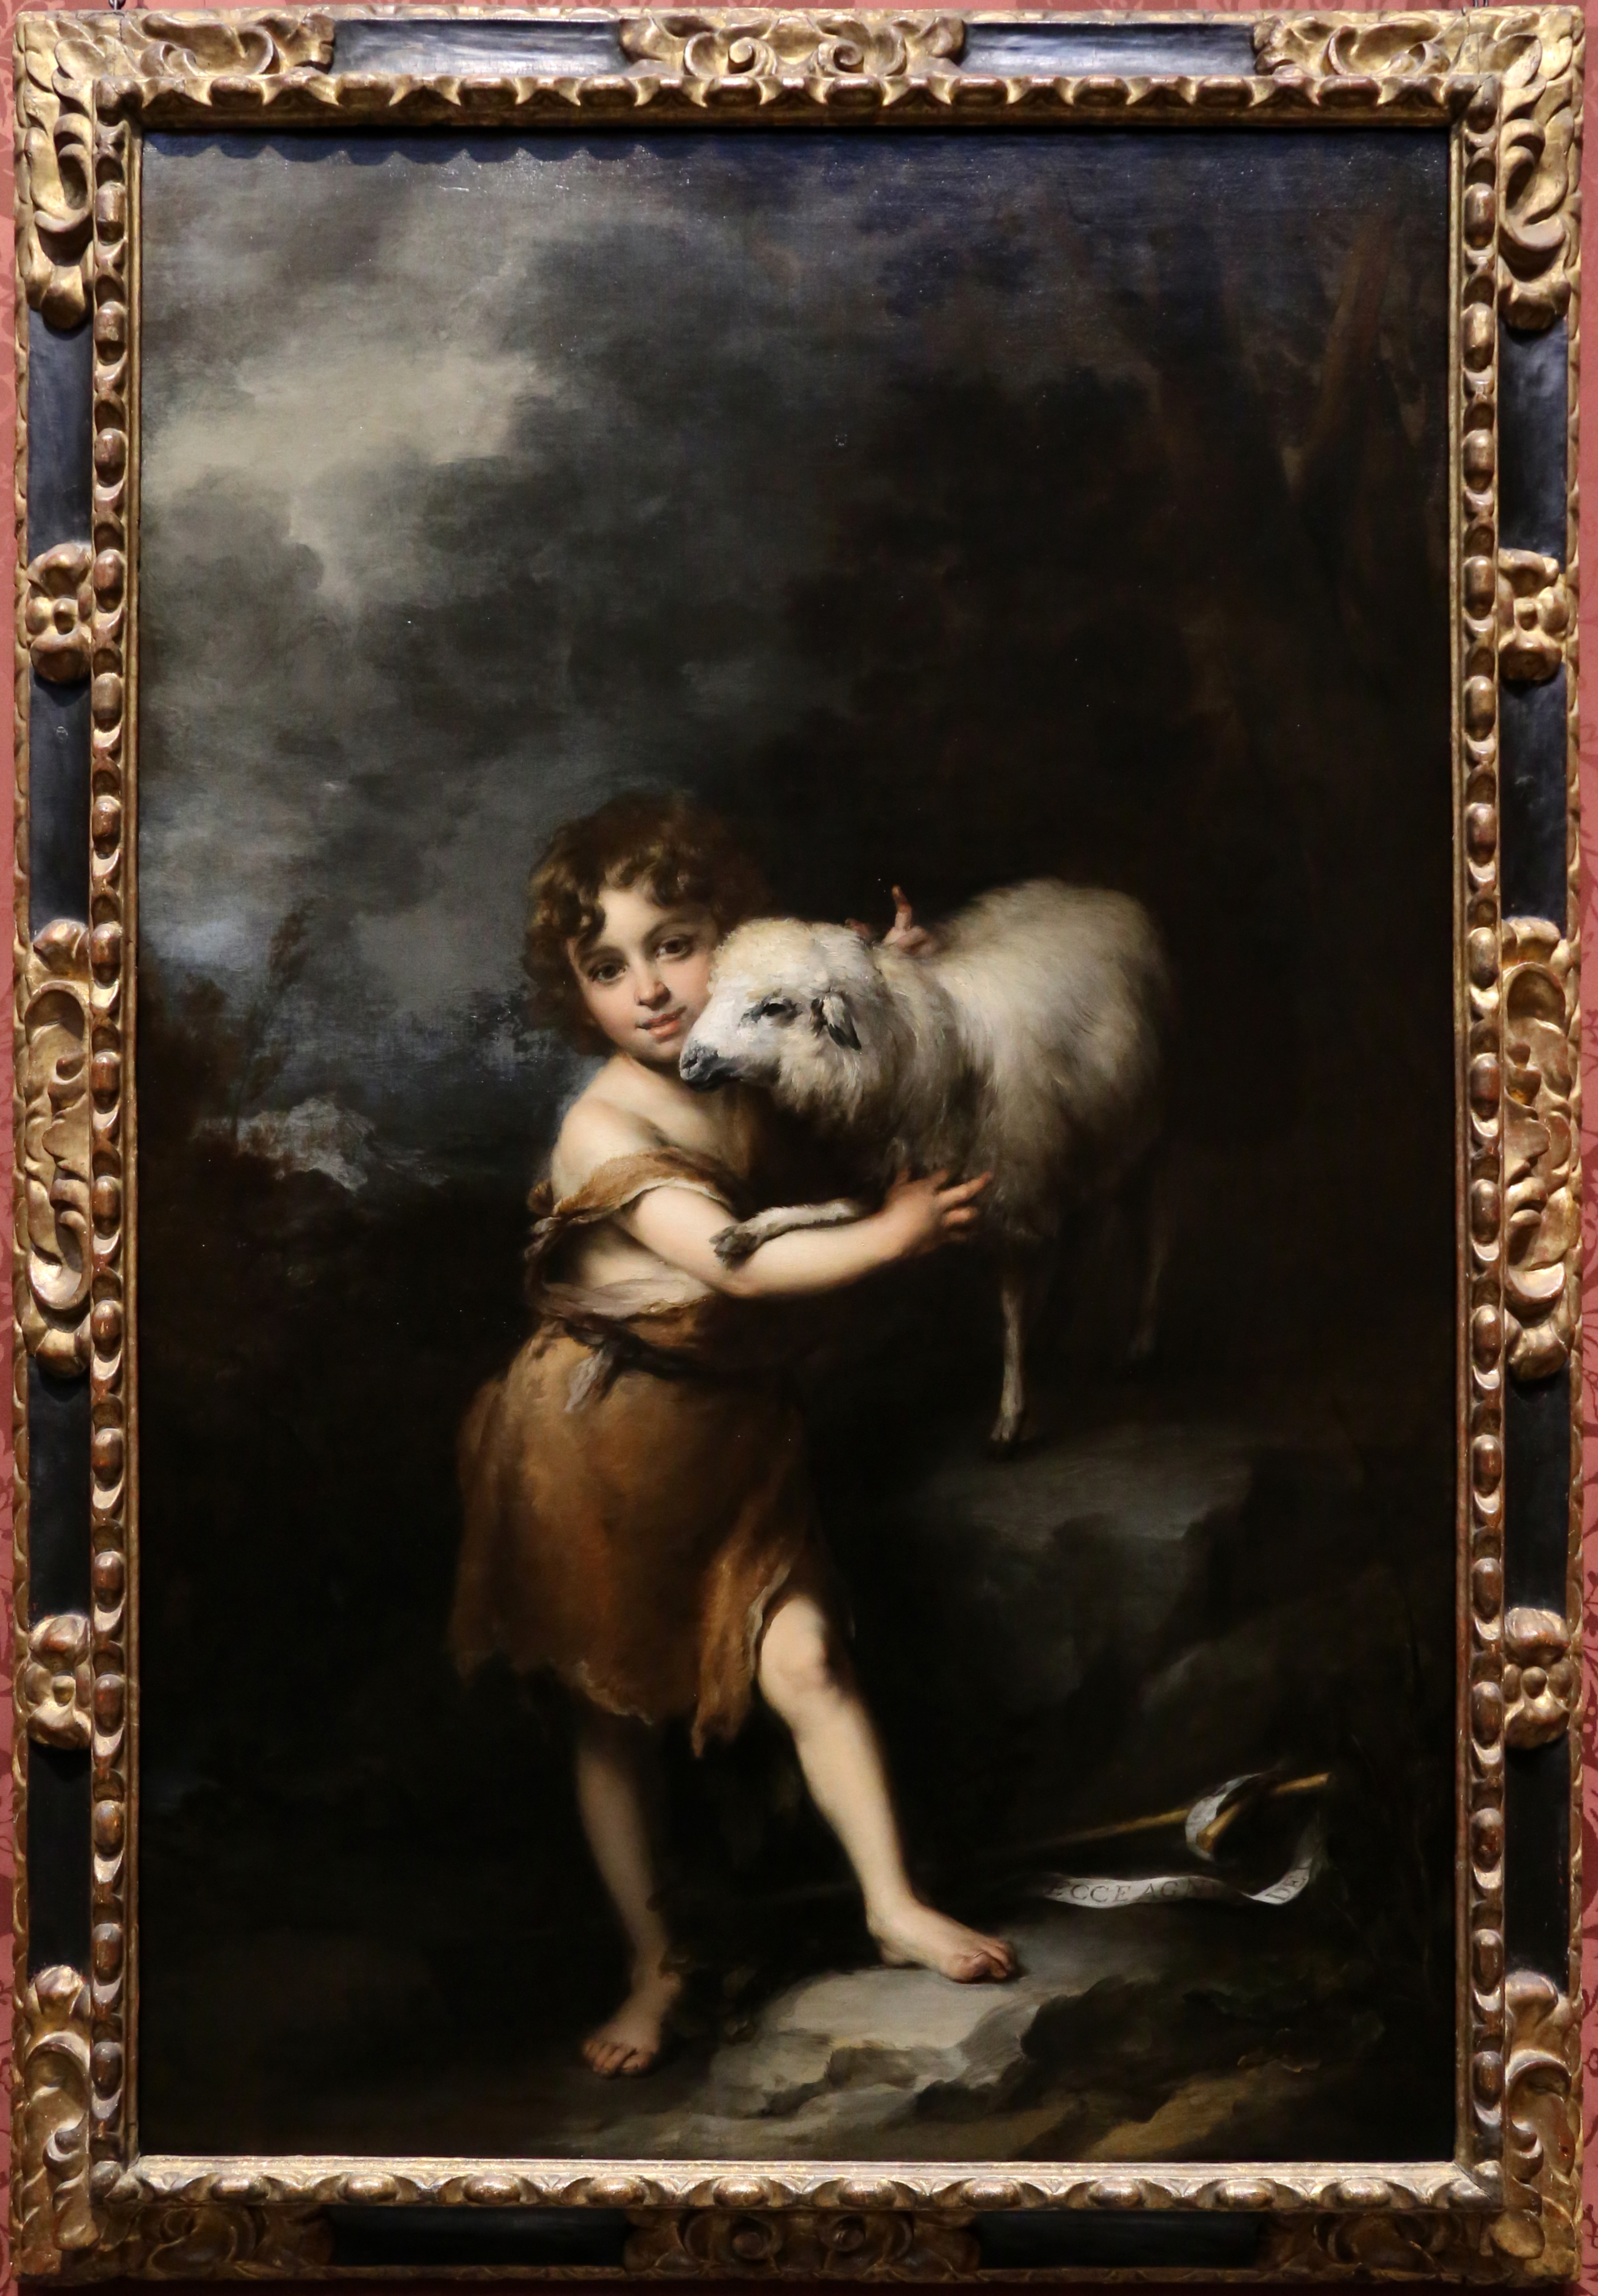 Мальчик с собакой бартоломе. Мурильо Бартоломе Эстебан - Севильский художник. Мурильо заботливый Пастушок. Картина мальчик с собакой Бартоломе Мурильо. Эстебан Мурильо "две женщины у окна".